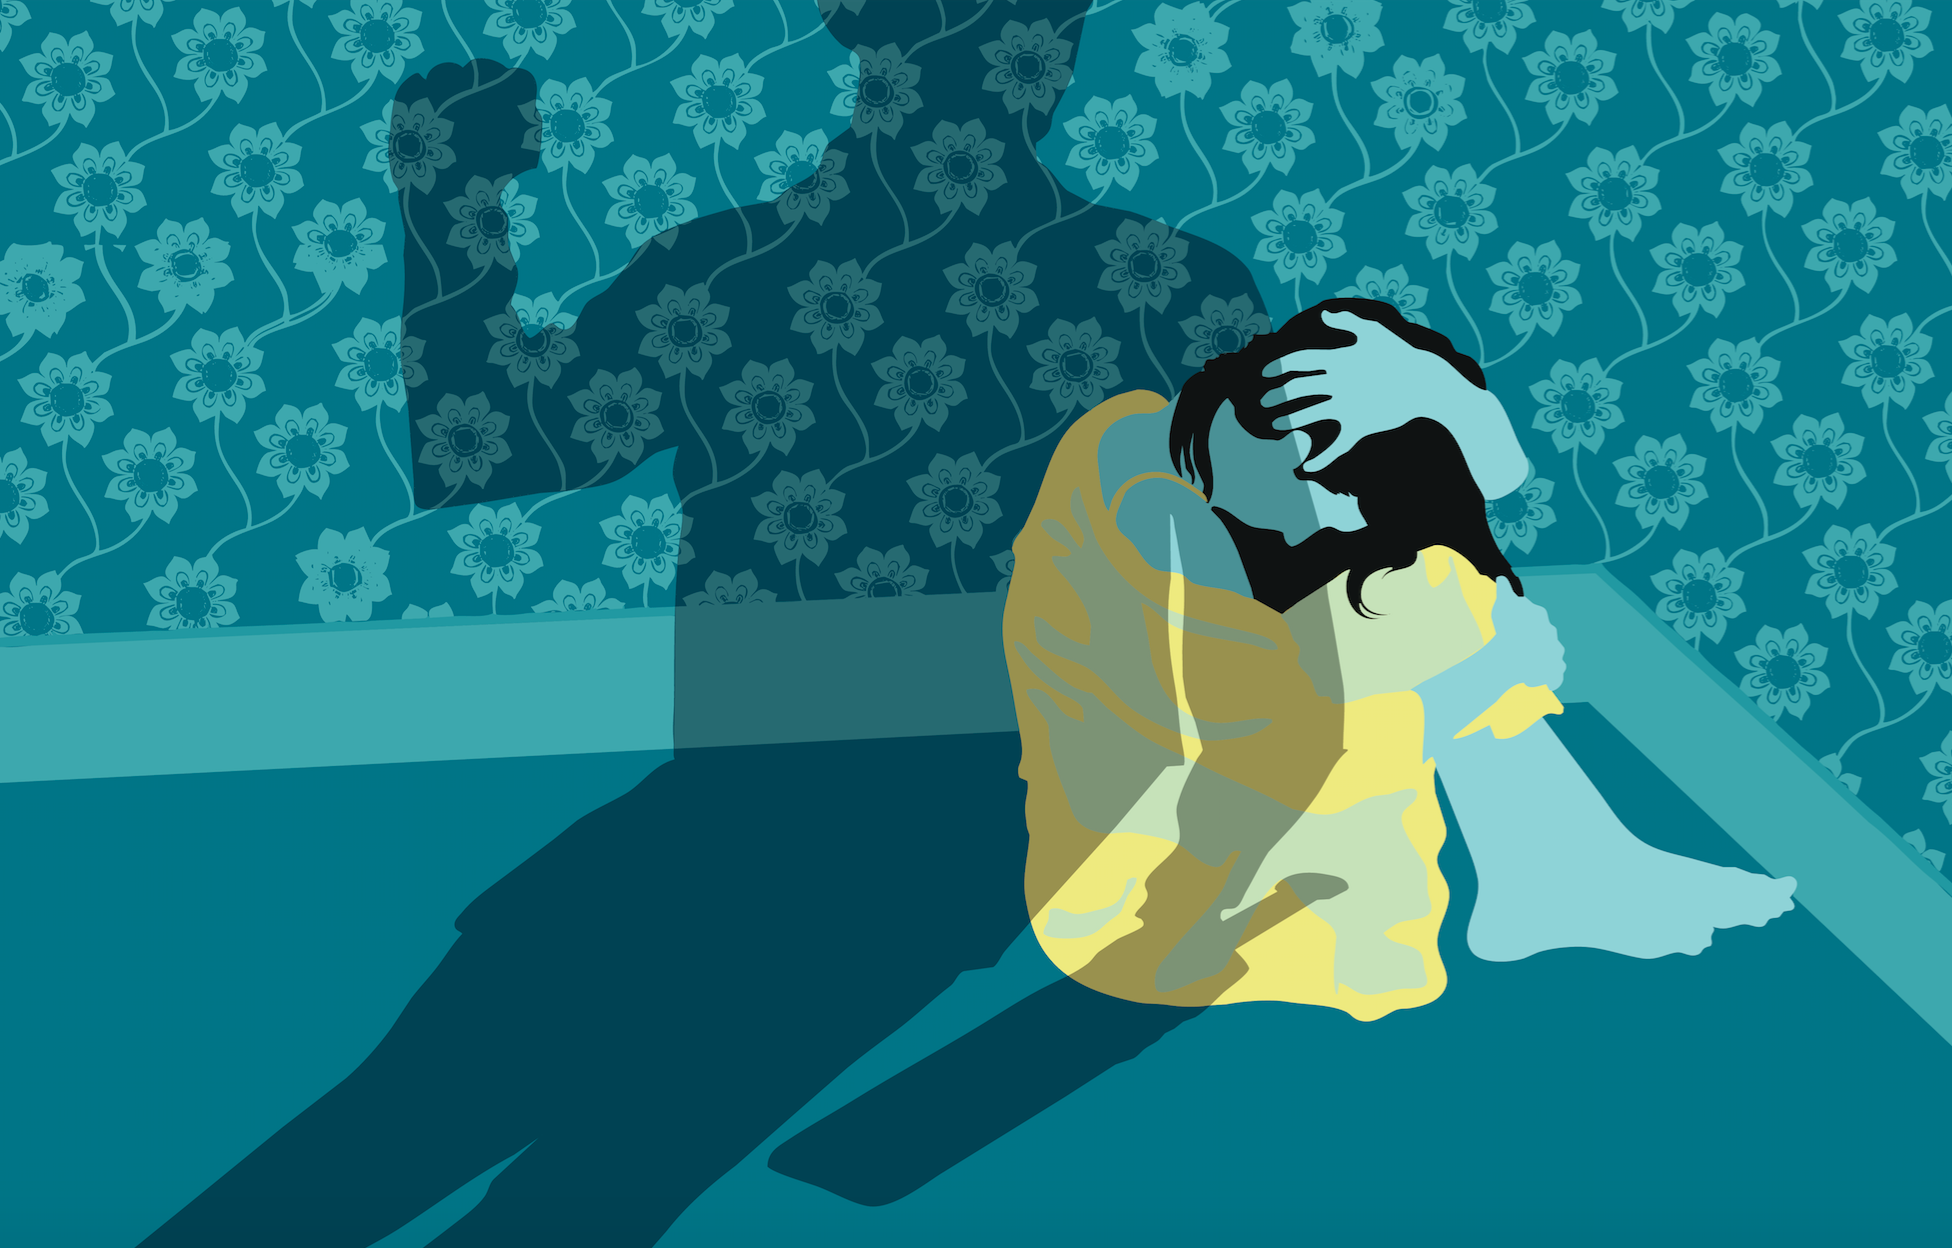 Психологическое насилие арт. Иллюстрация психологический абьюз. Психологическое насилие картинки. Арты на тему домашнего насилия.